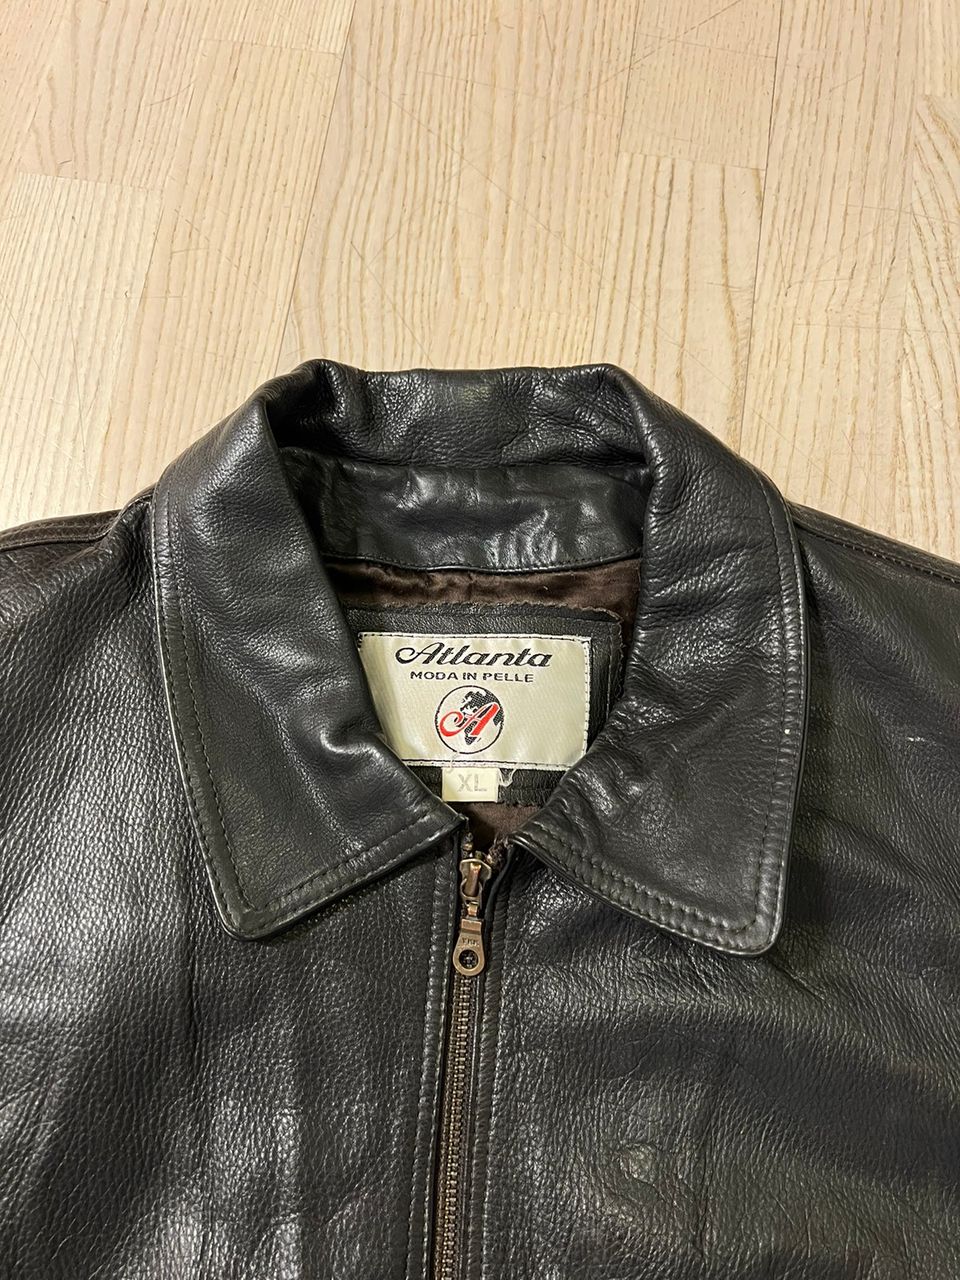 Atlanta heavy leather jacket